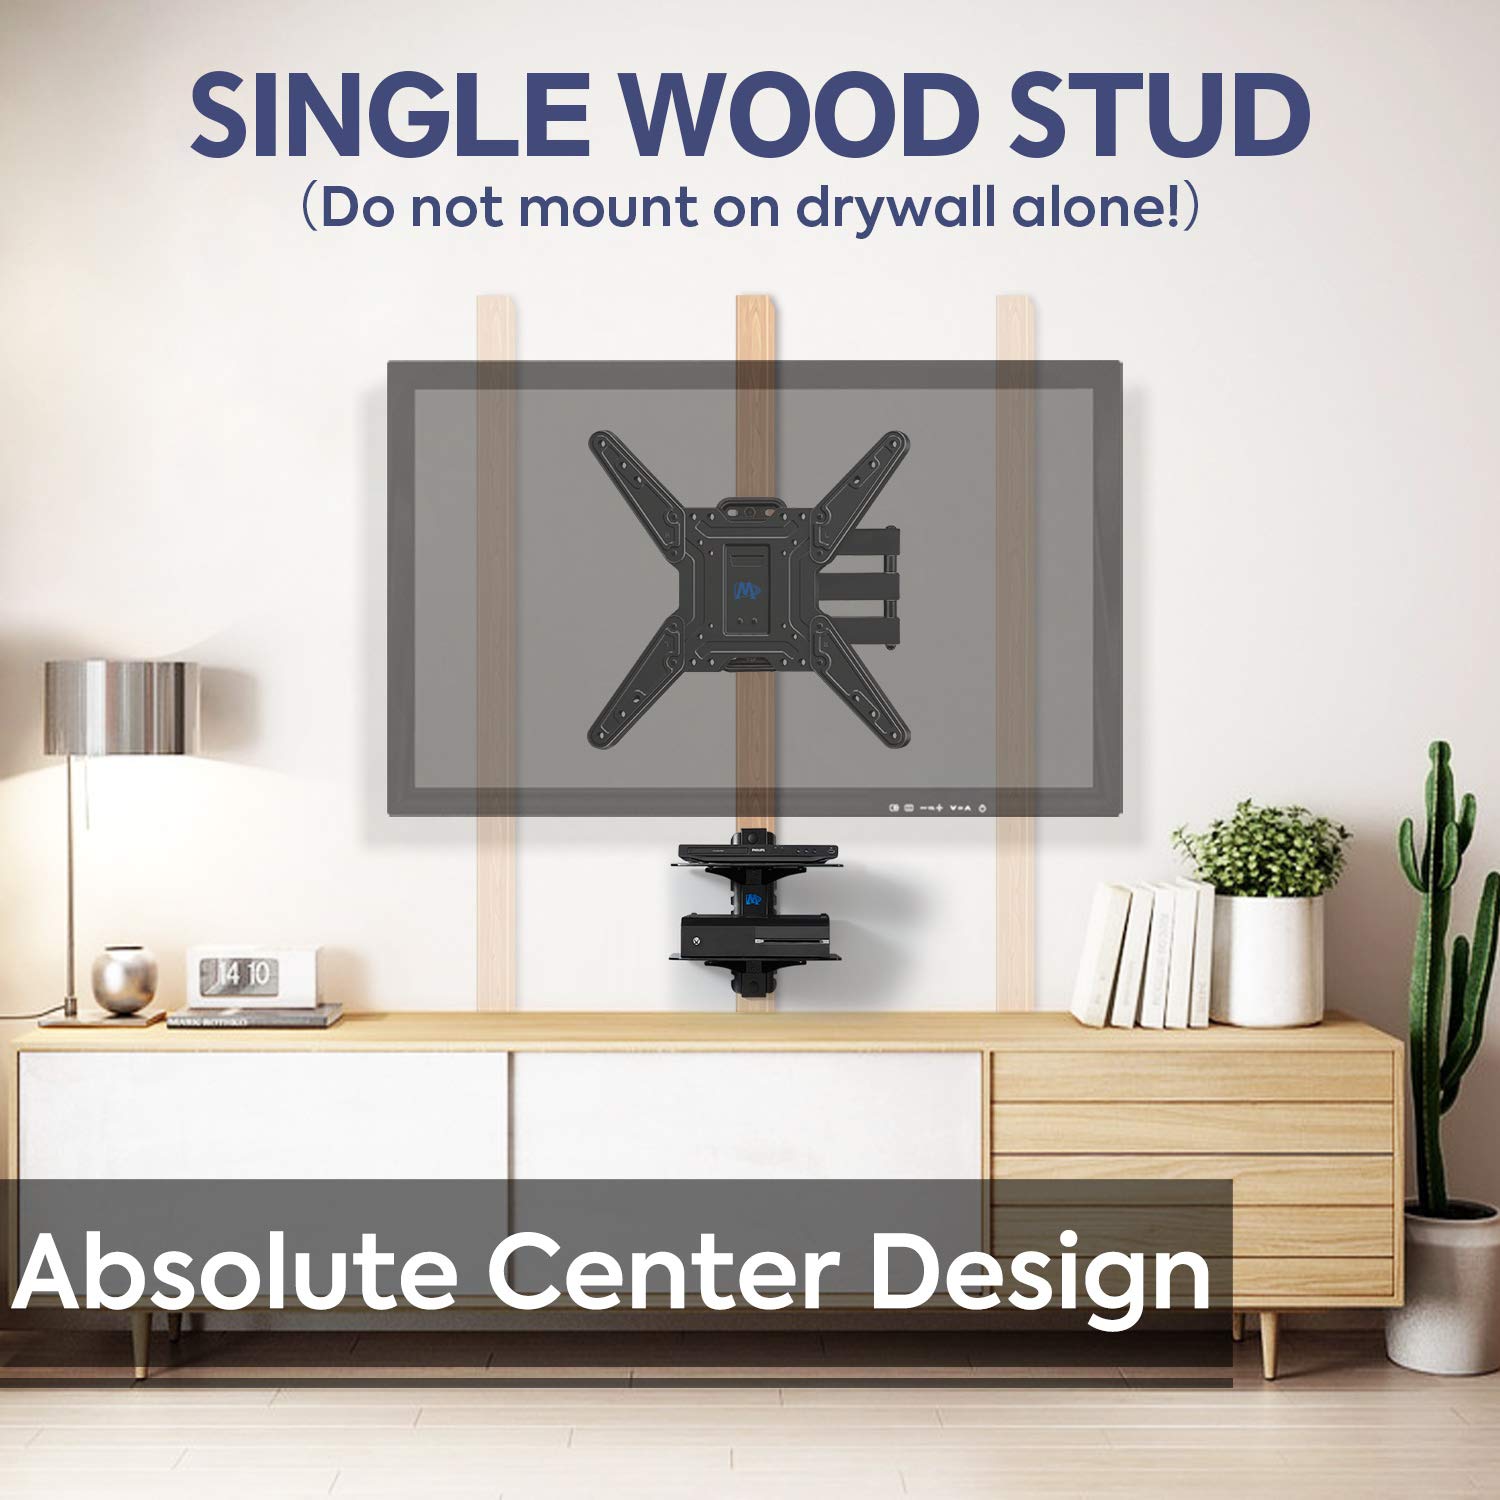 install on single wood stud